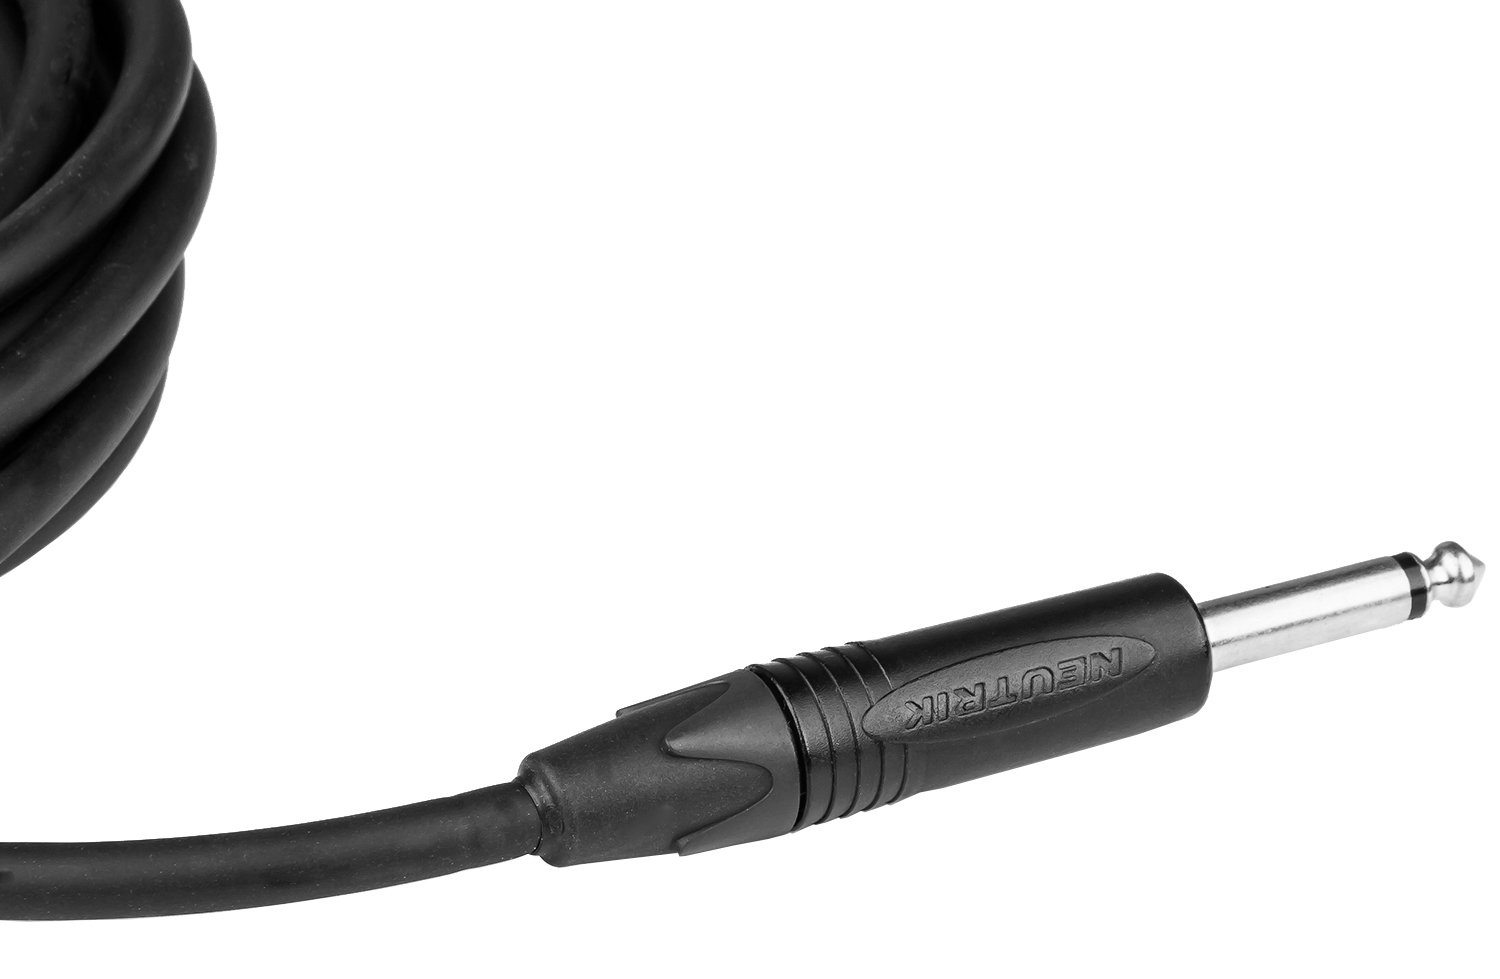 X-tone X3002-3m Instrument Cable Golden Series Neutrik Droit/droit 3m - Cable - Variation 2